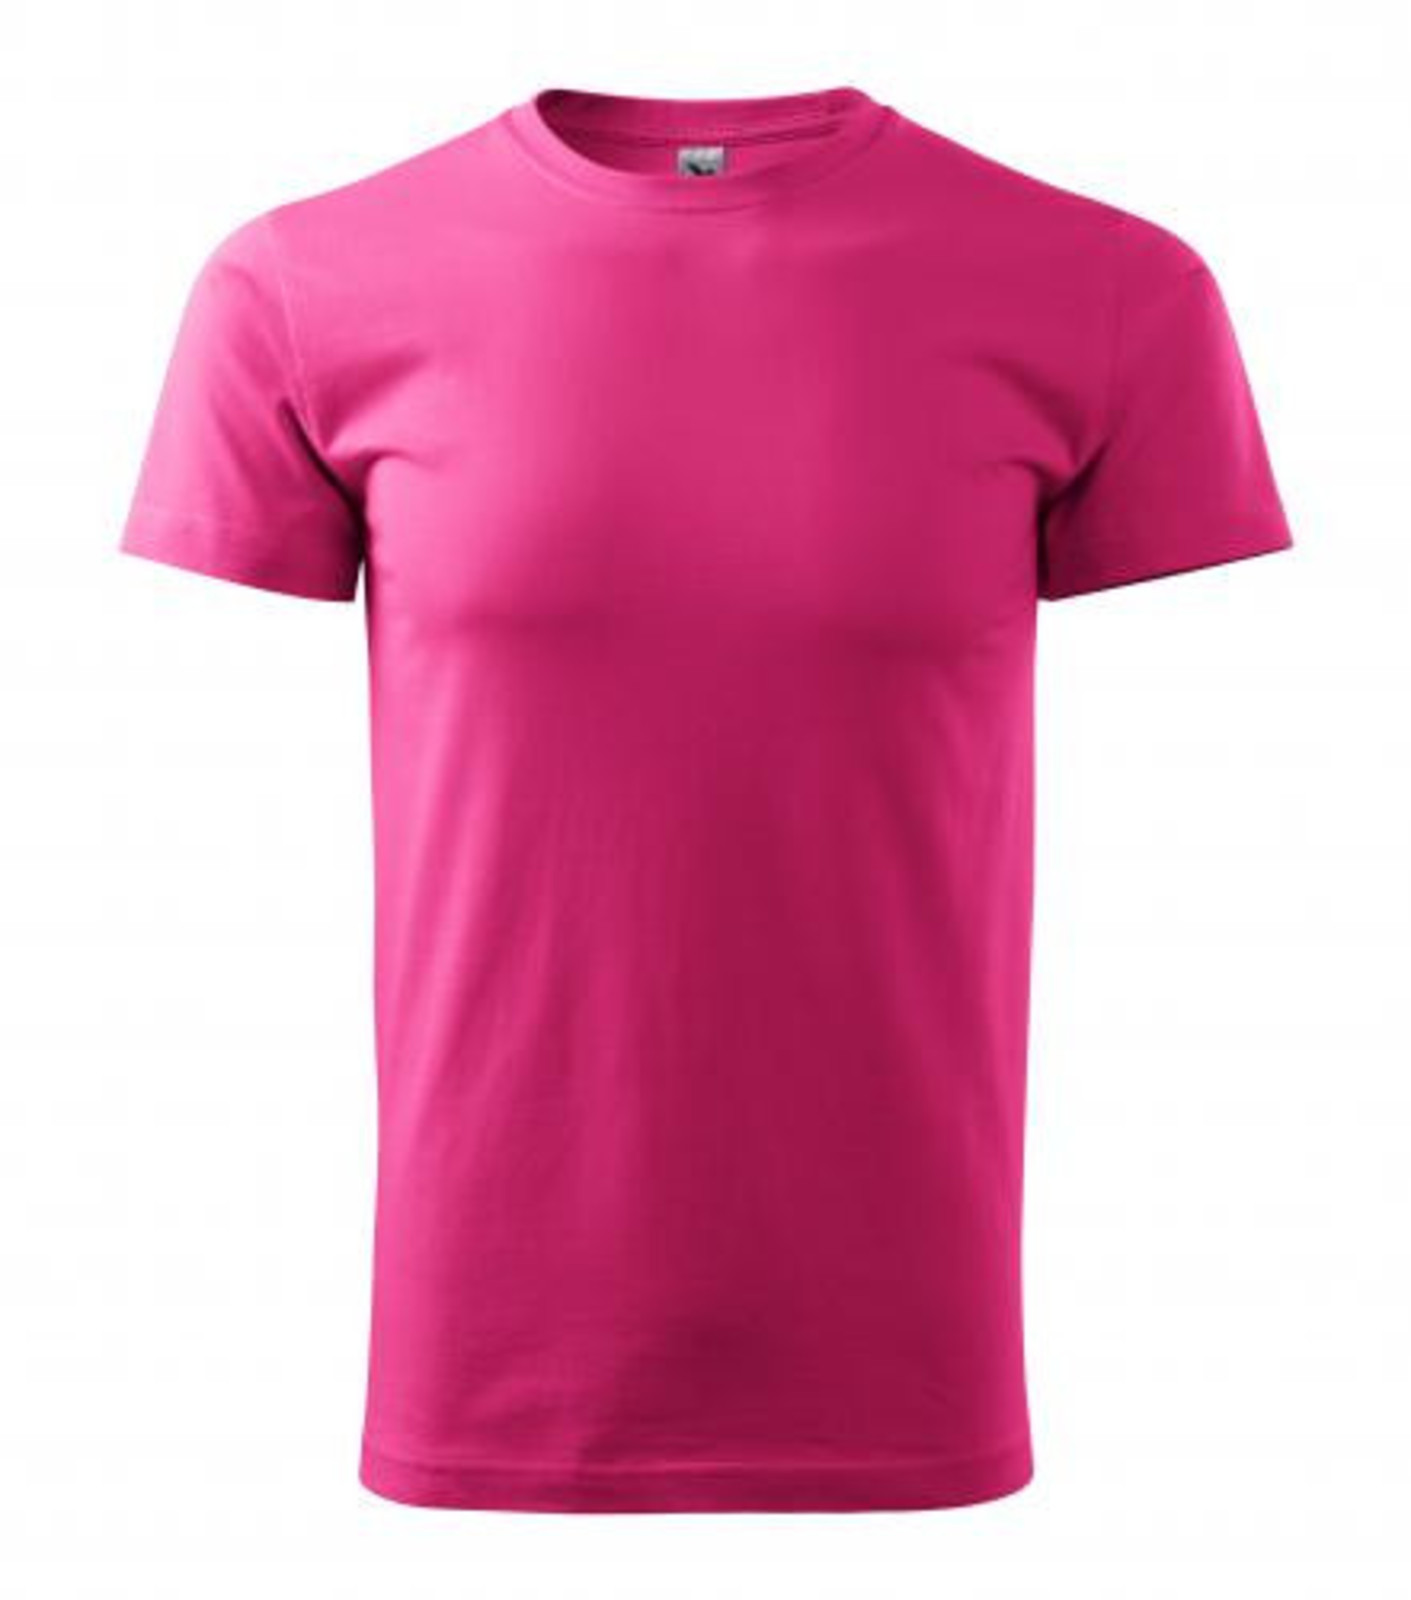 Unisex tričko Malfini Heavy New 137 - veľkosť: L, farba: purpurová